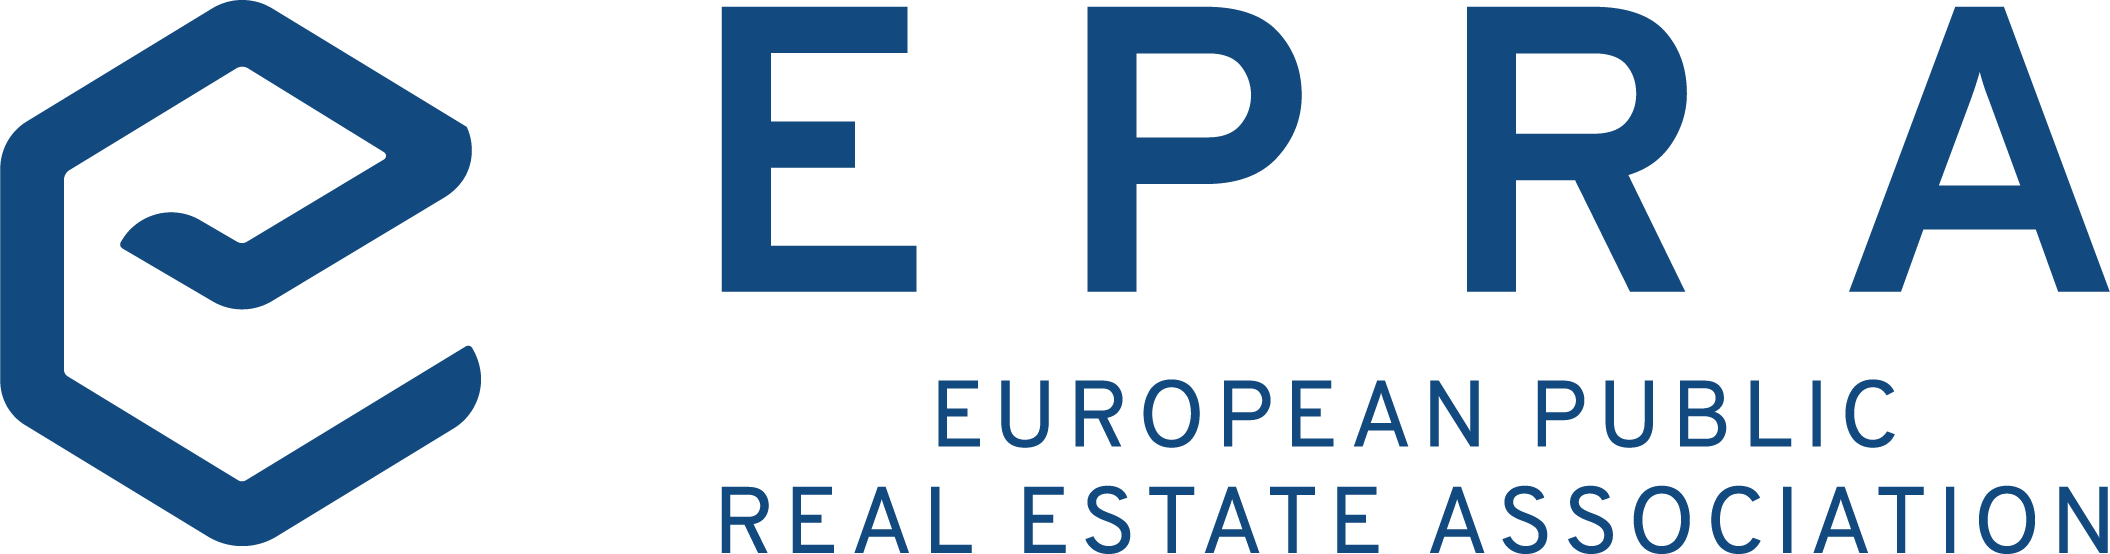 EPRA logo_standard